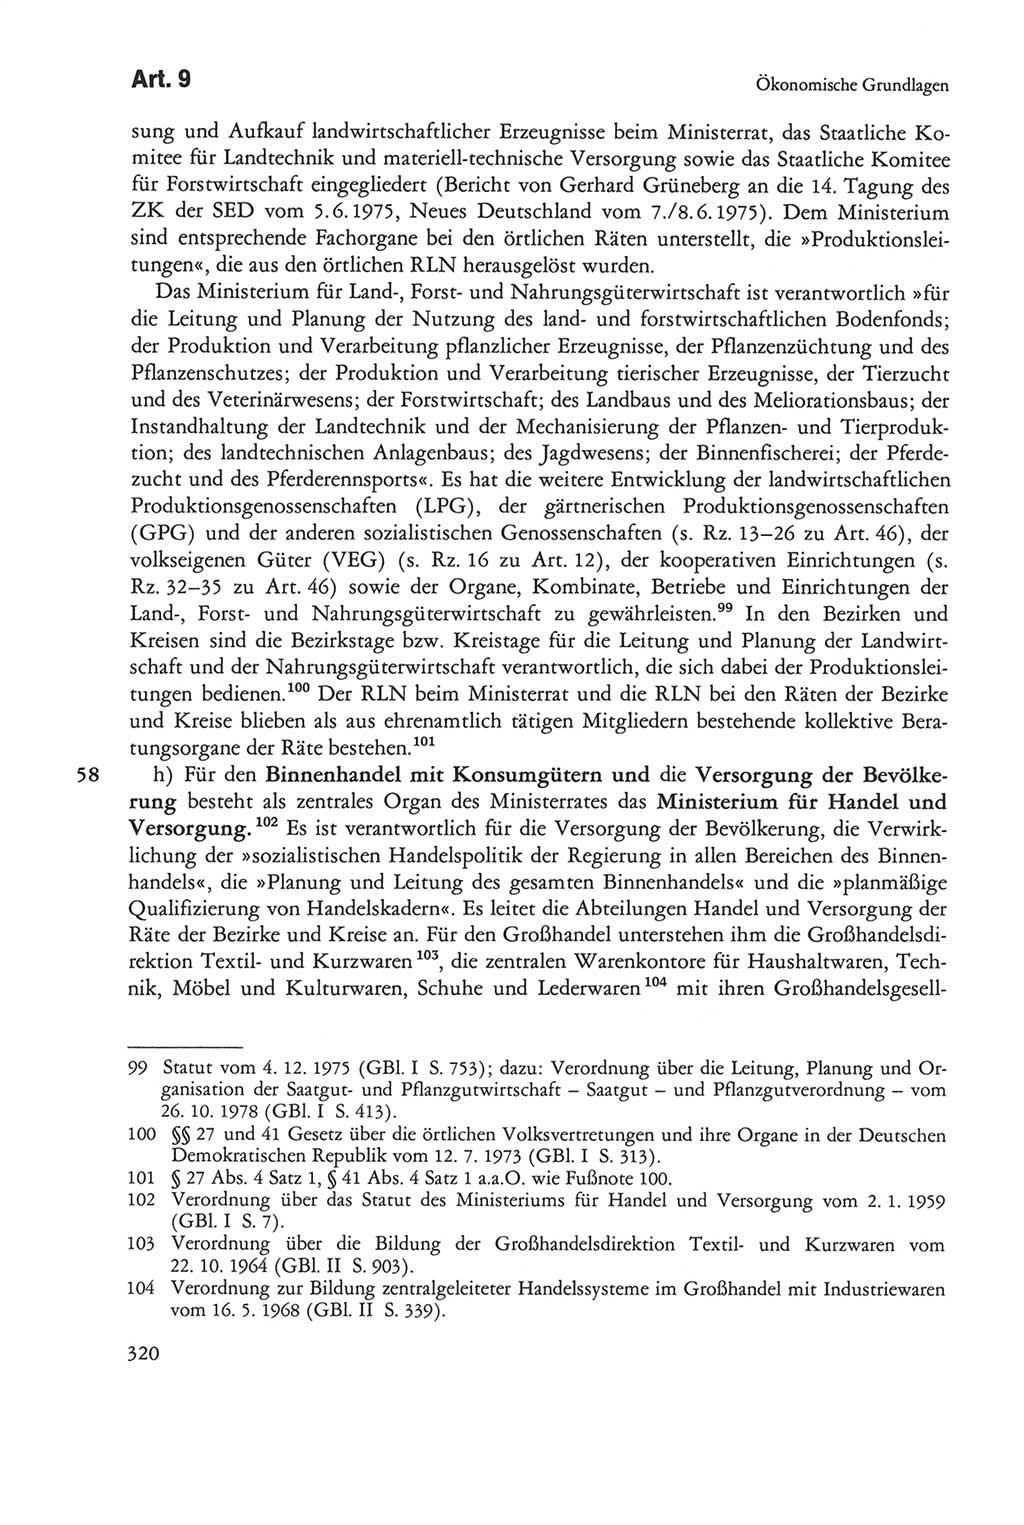 Die sozialistische Verfassung der Deutschen Demokratischen Republik (DDR), Kommentar mit einem Nachtrag 1997, Seite 320 (Soz. Verf. DDR Komm. Nachtr. 1997, S. 320)